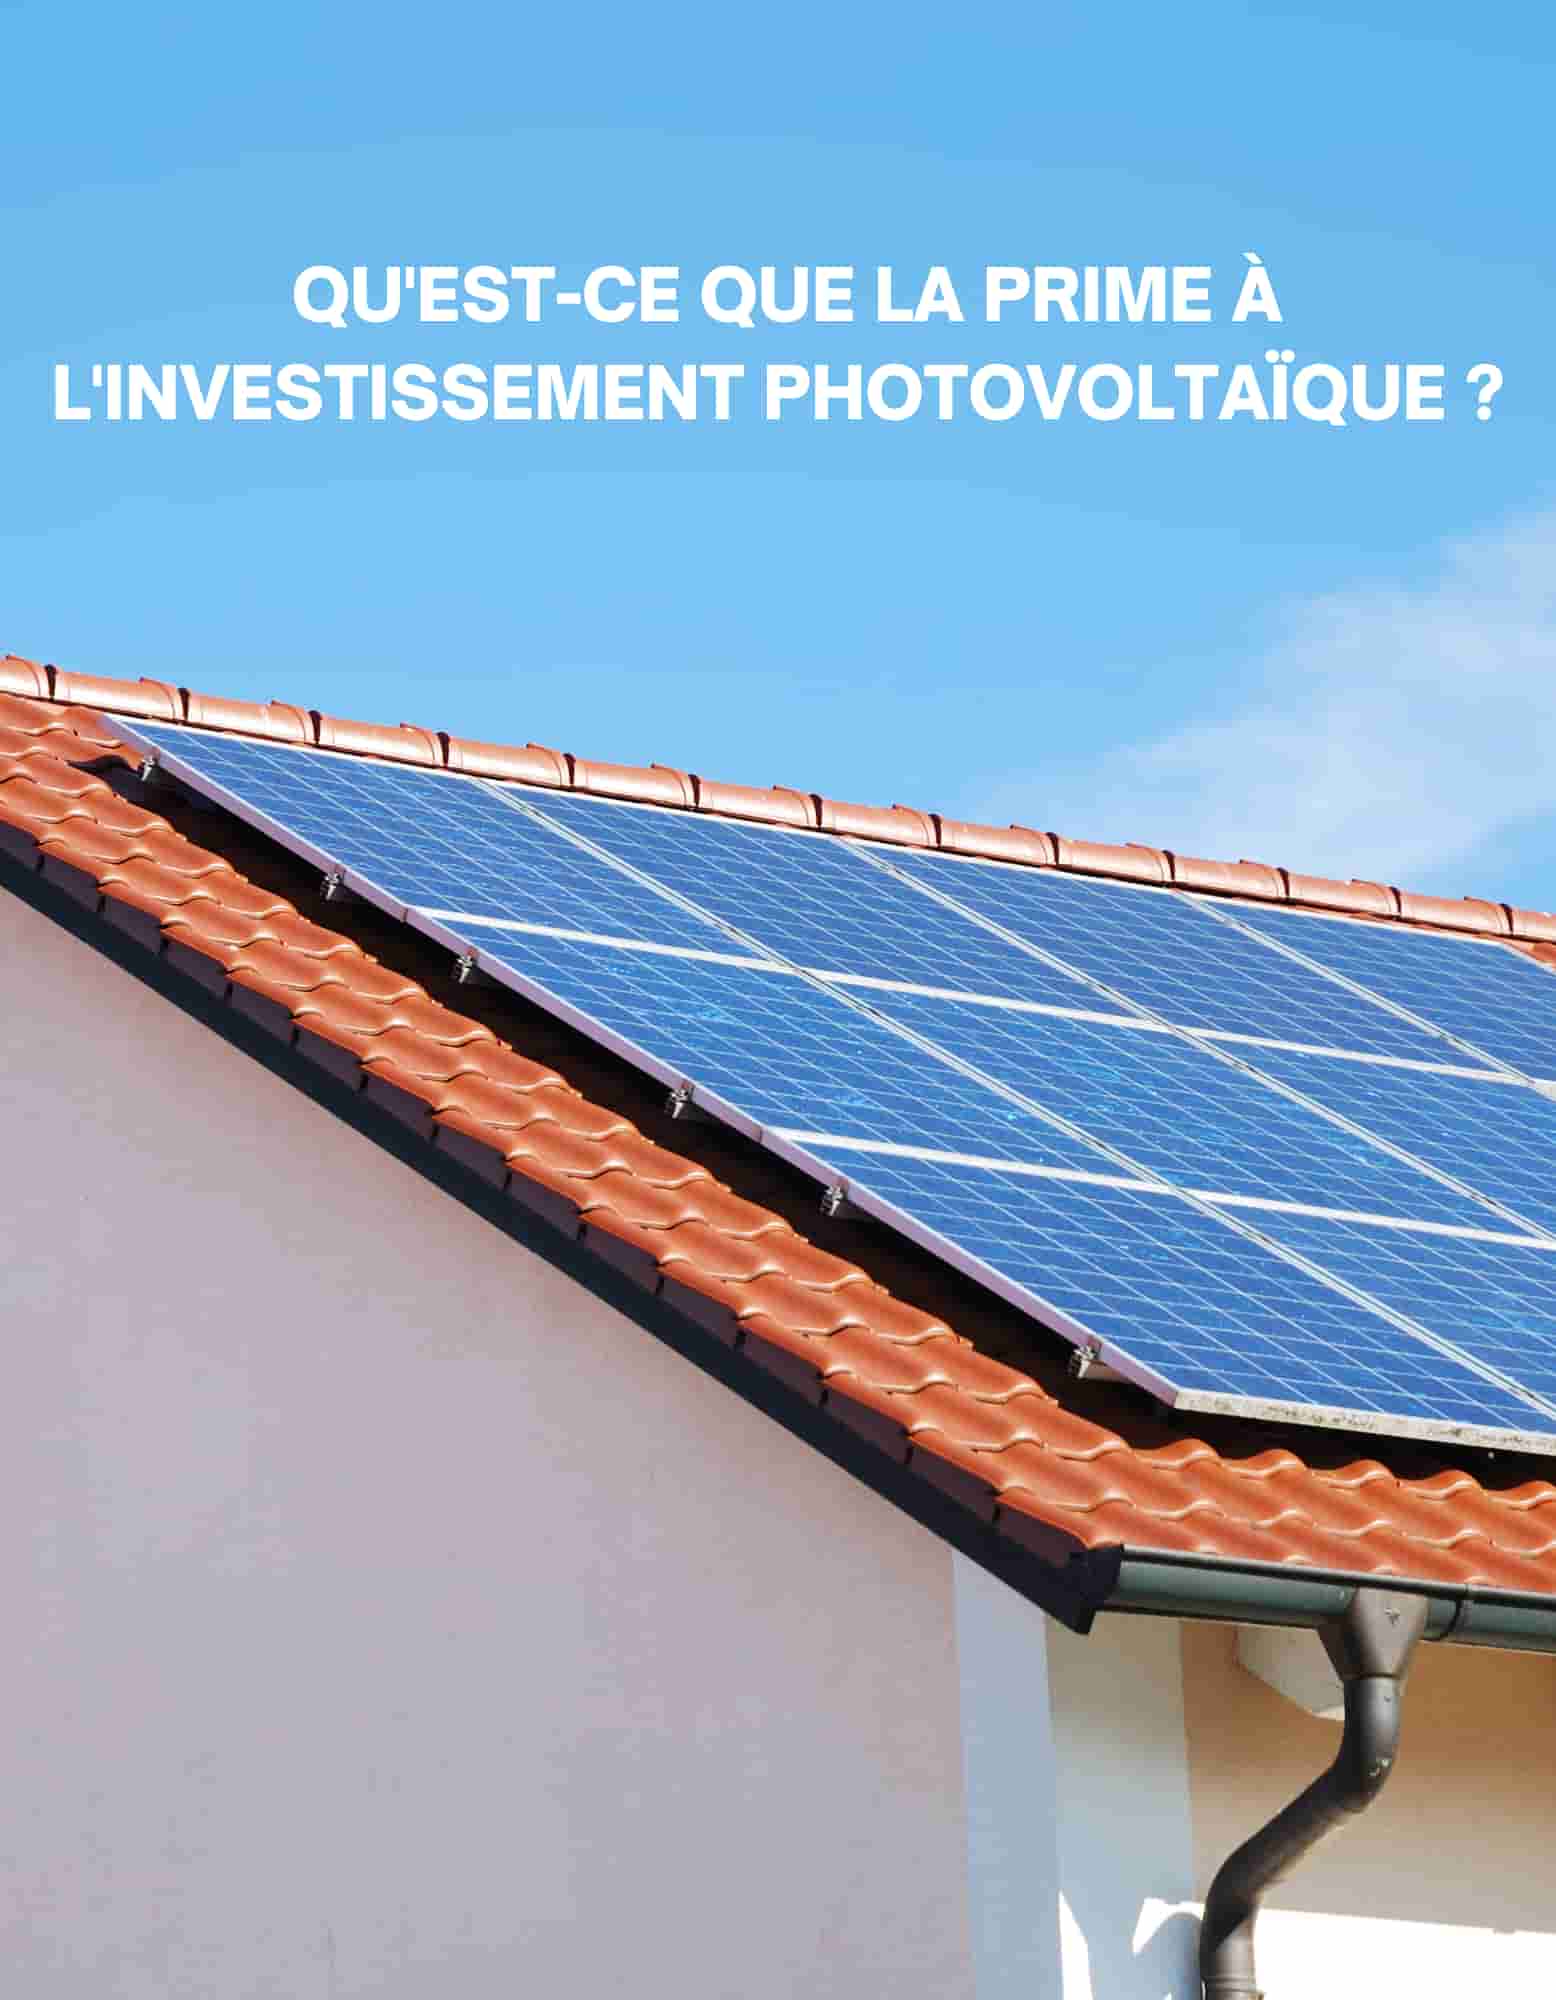 Prime à l'investissement photovoltaïque